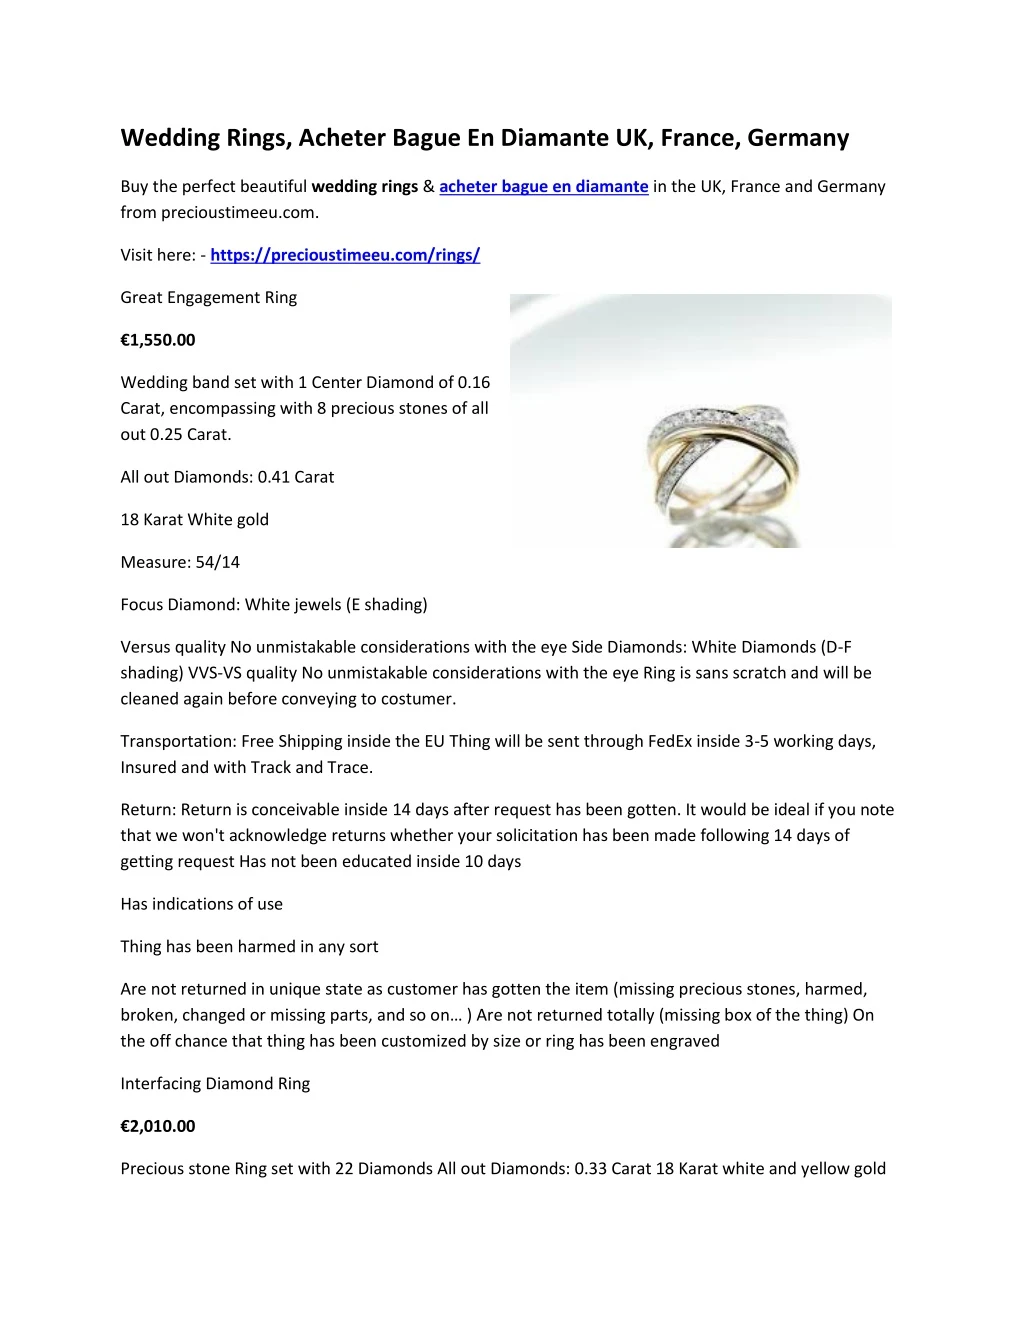 wedding rings acheter bague en diamante uk france